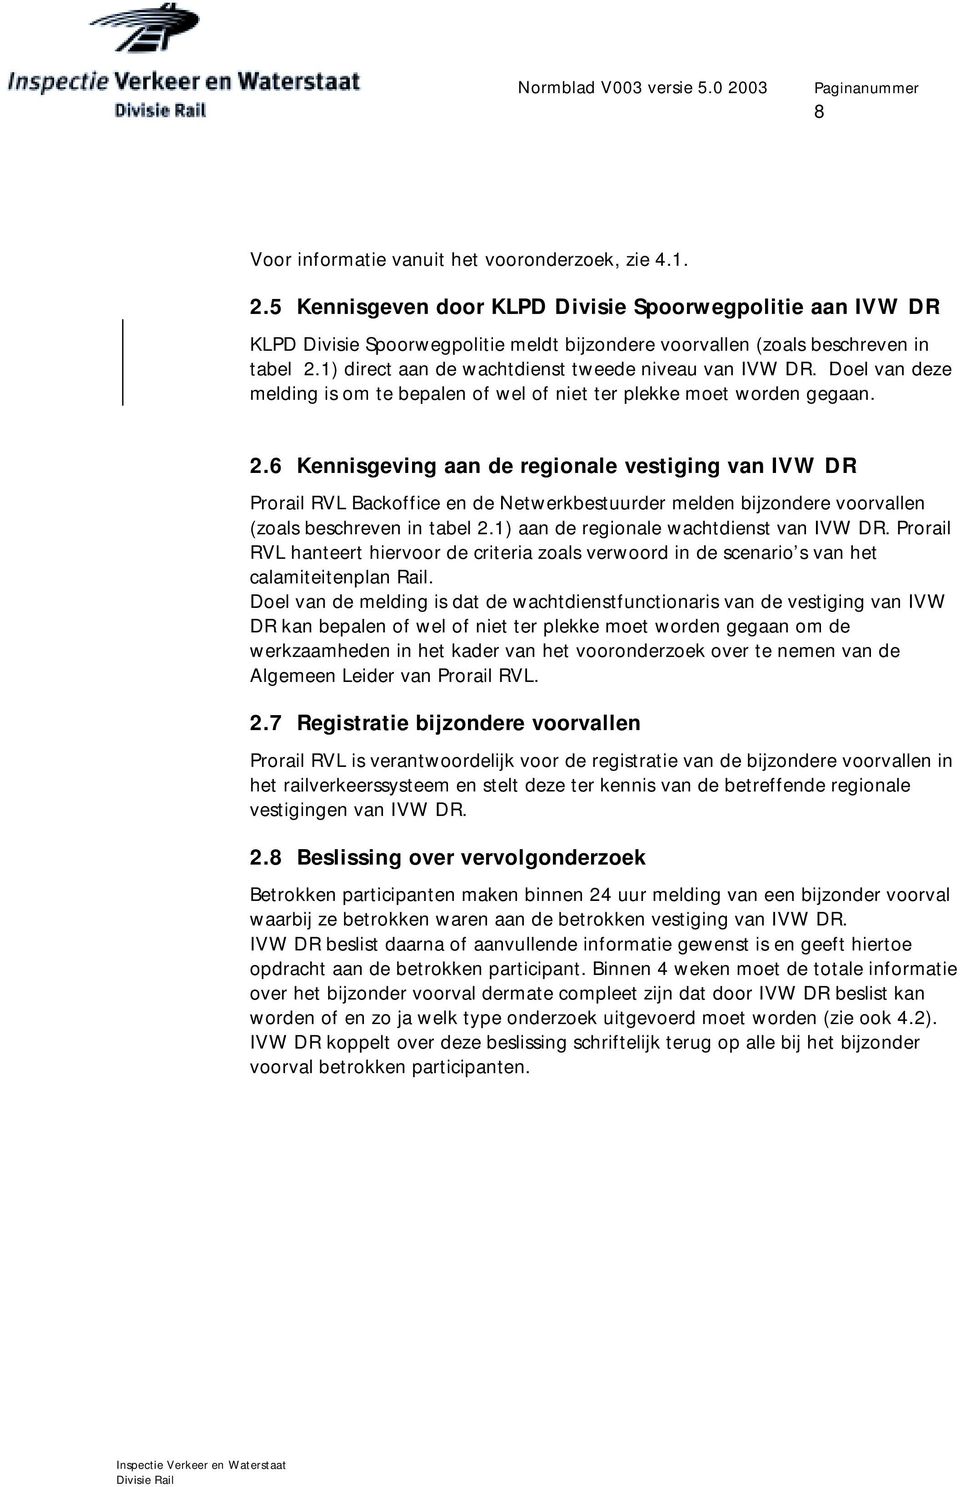 6 Kennisgeving aan de regionale vestiging van IVW DR Prorail RVL Backoffice en de Netwerkbestuurder melden bijzondere voorvallen (zoals beschreven in tabel 2.) aan de regionale wachtdienst van IVW DR.